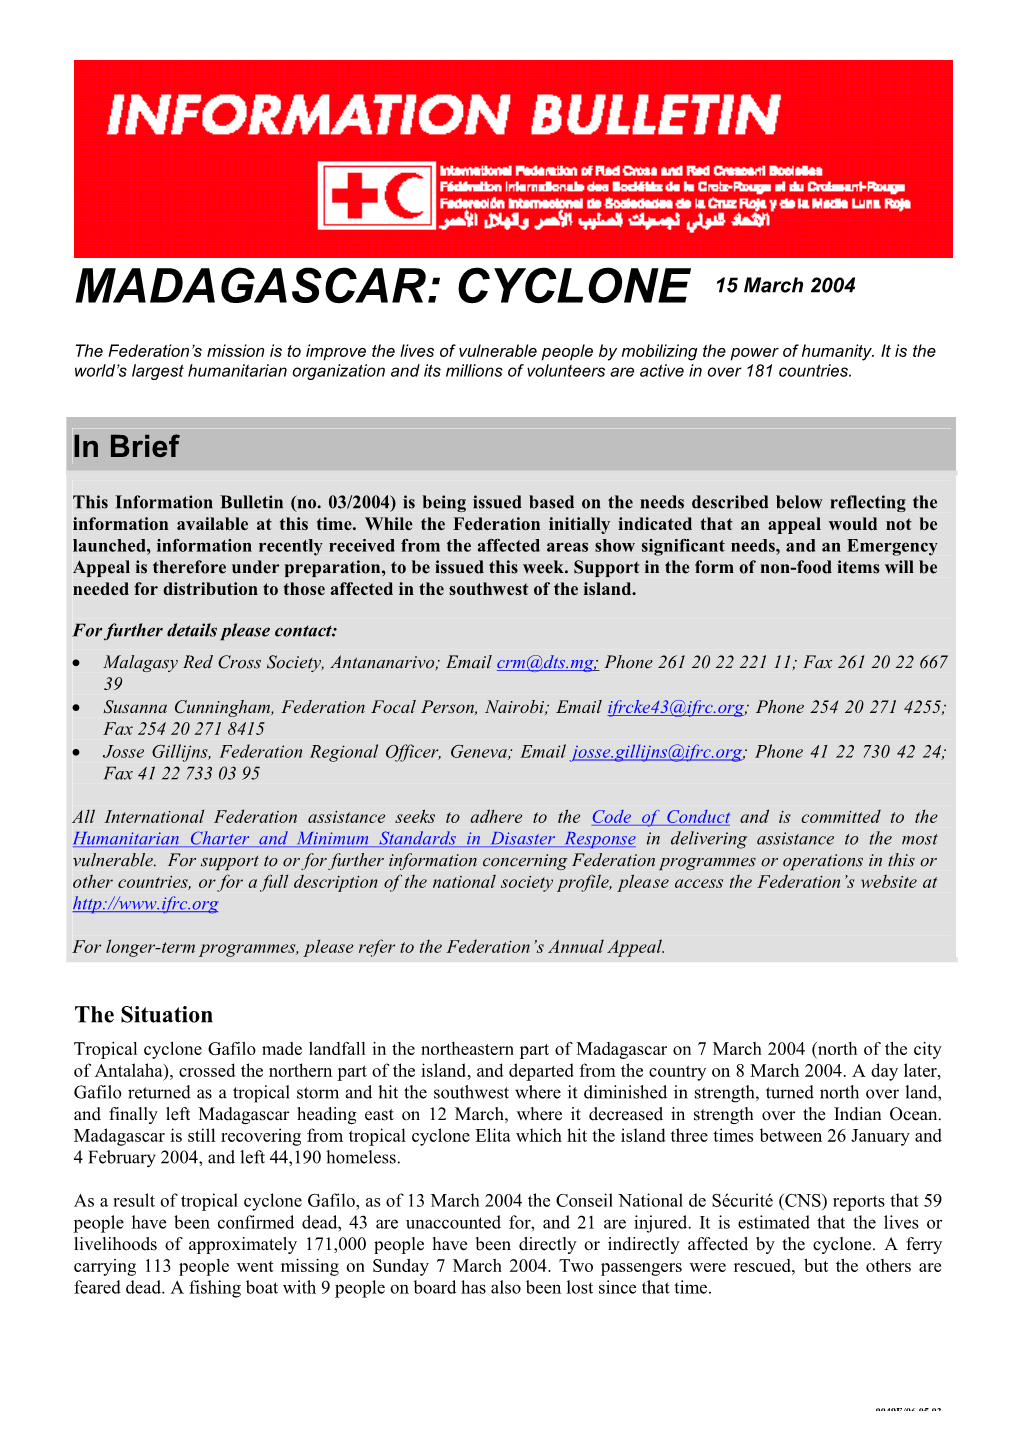 MADAGASCAR: CYCLONE 15 March 2004